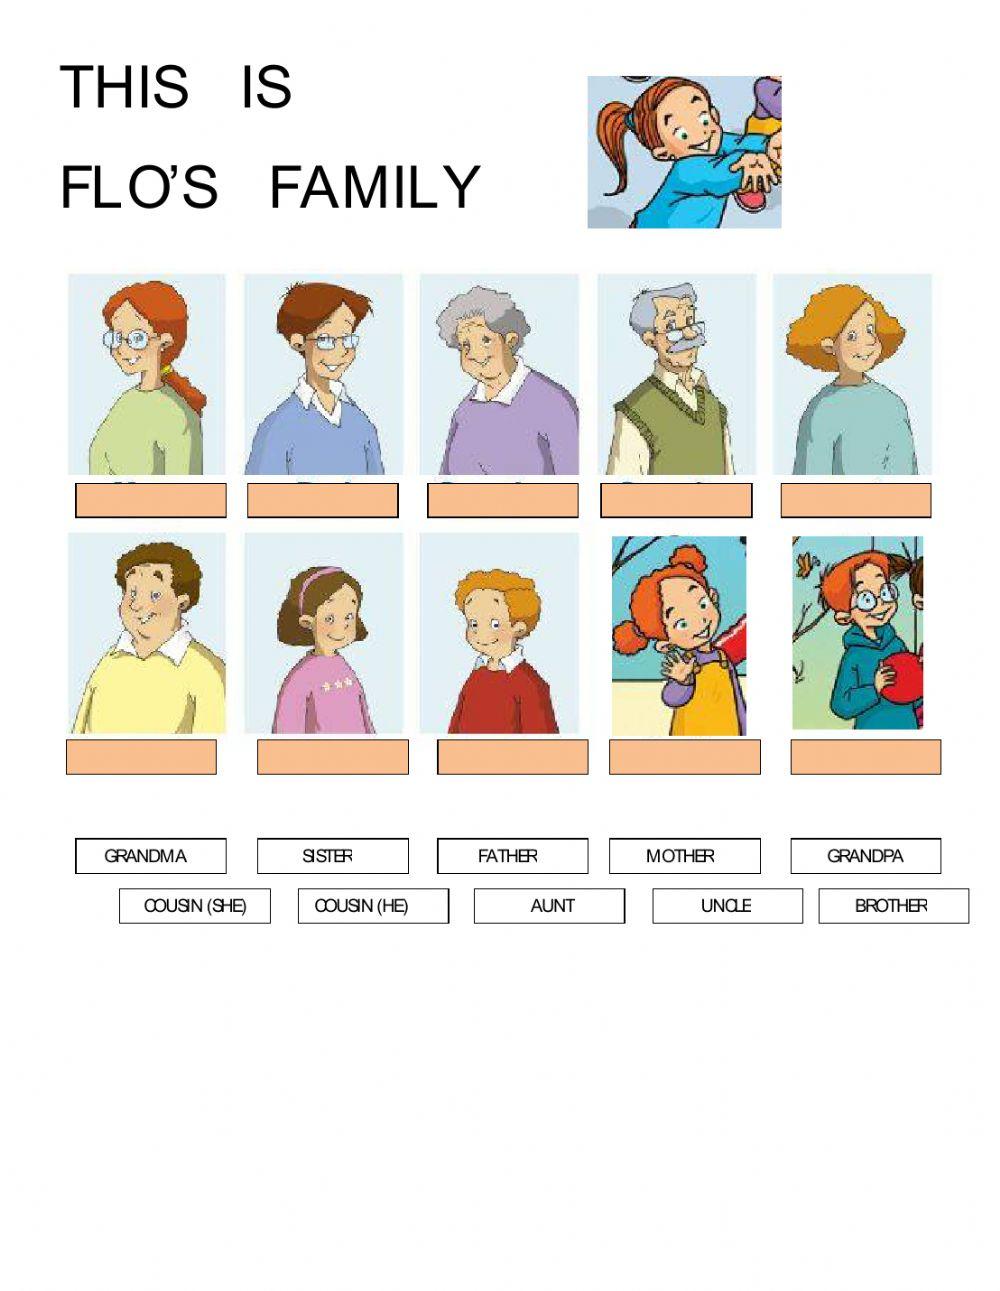 Flo's family